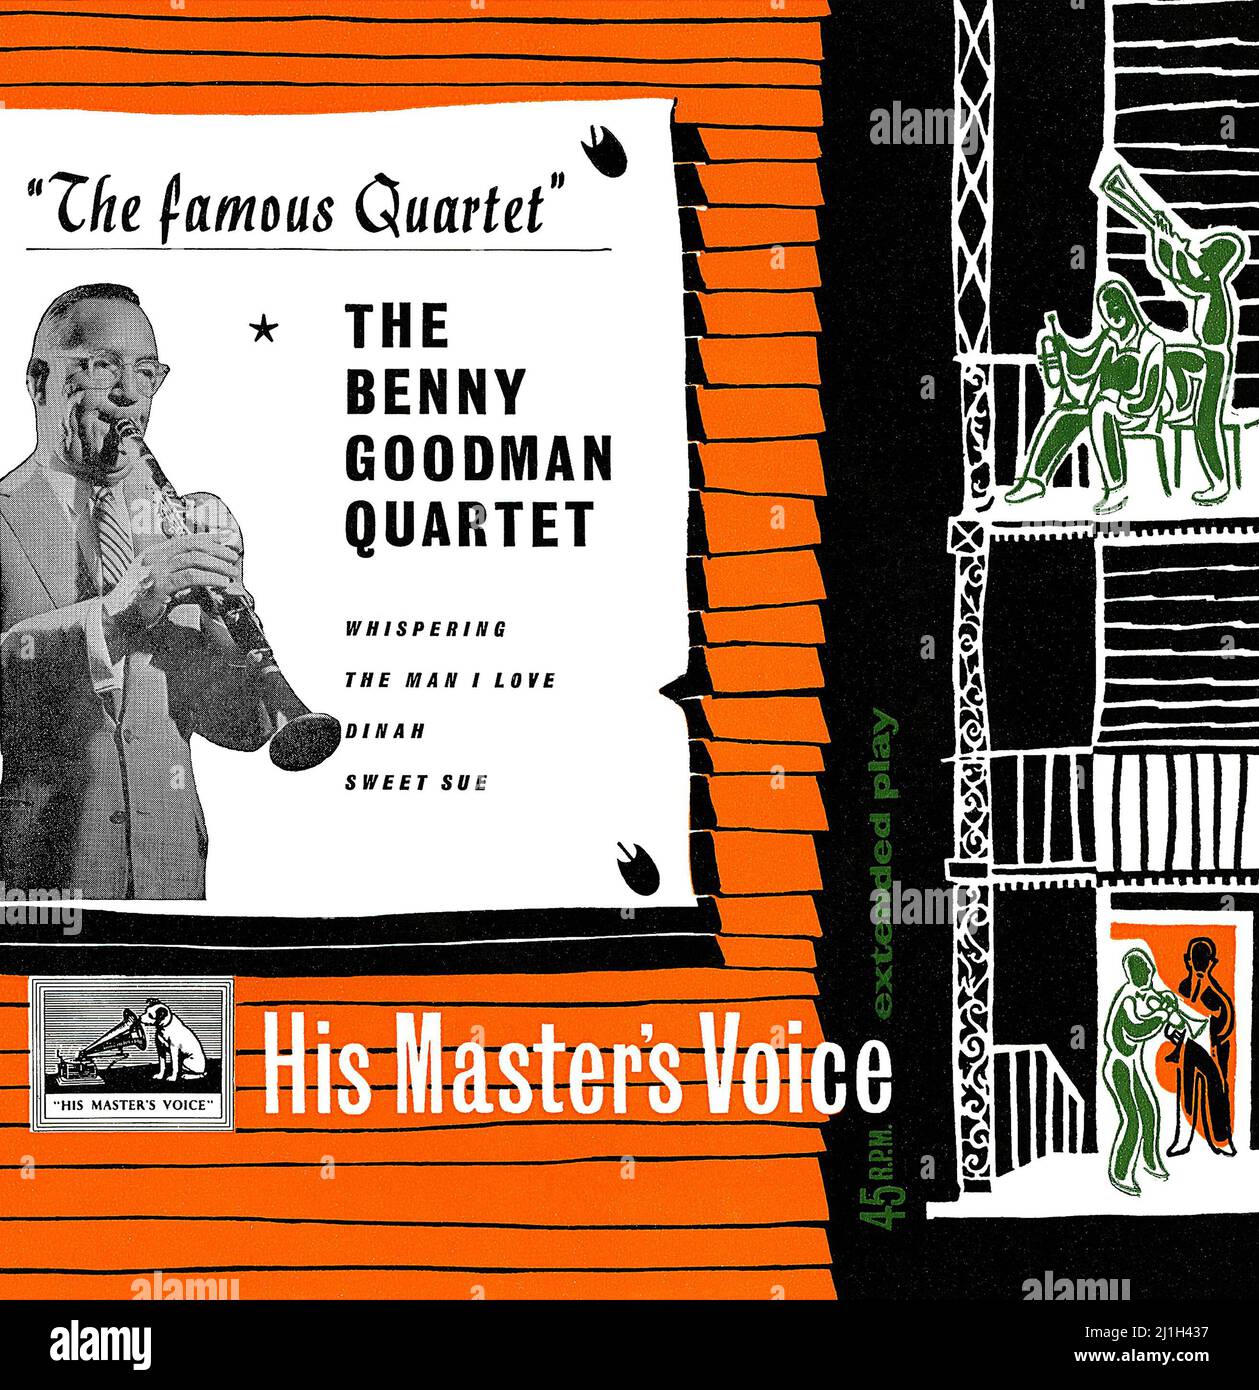 Portada de un vinilo británico 7' E.P. del Cuarteto Benny Goodman titulado El famoso Cuarteto. Publicado en 1956 en el sello de la voz de su maestro. Las grabaciones son de la década de 1930. Foto de stock